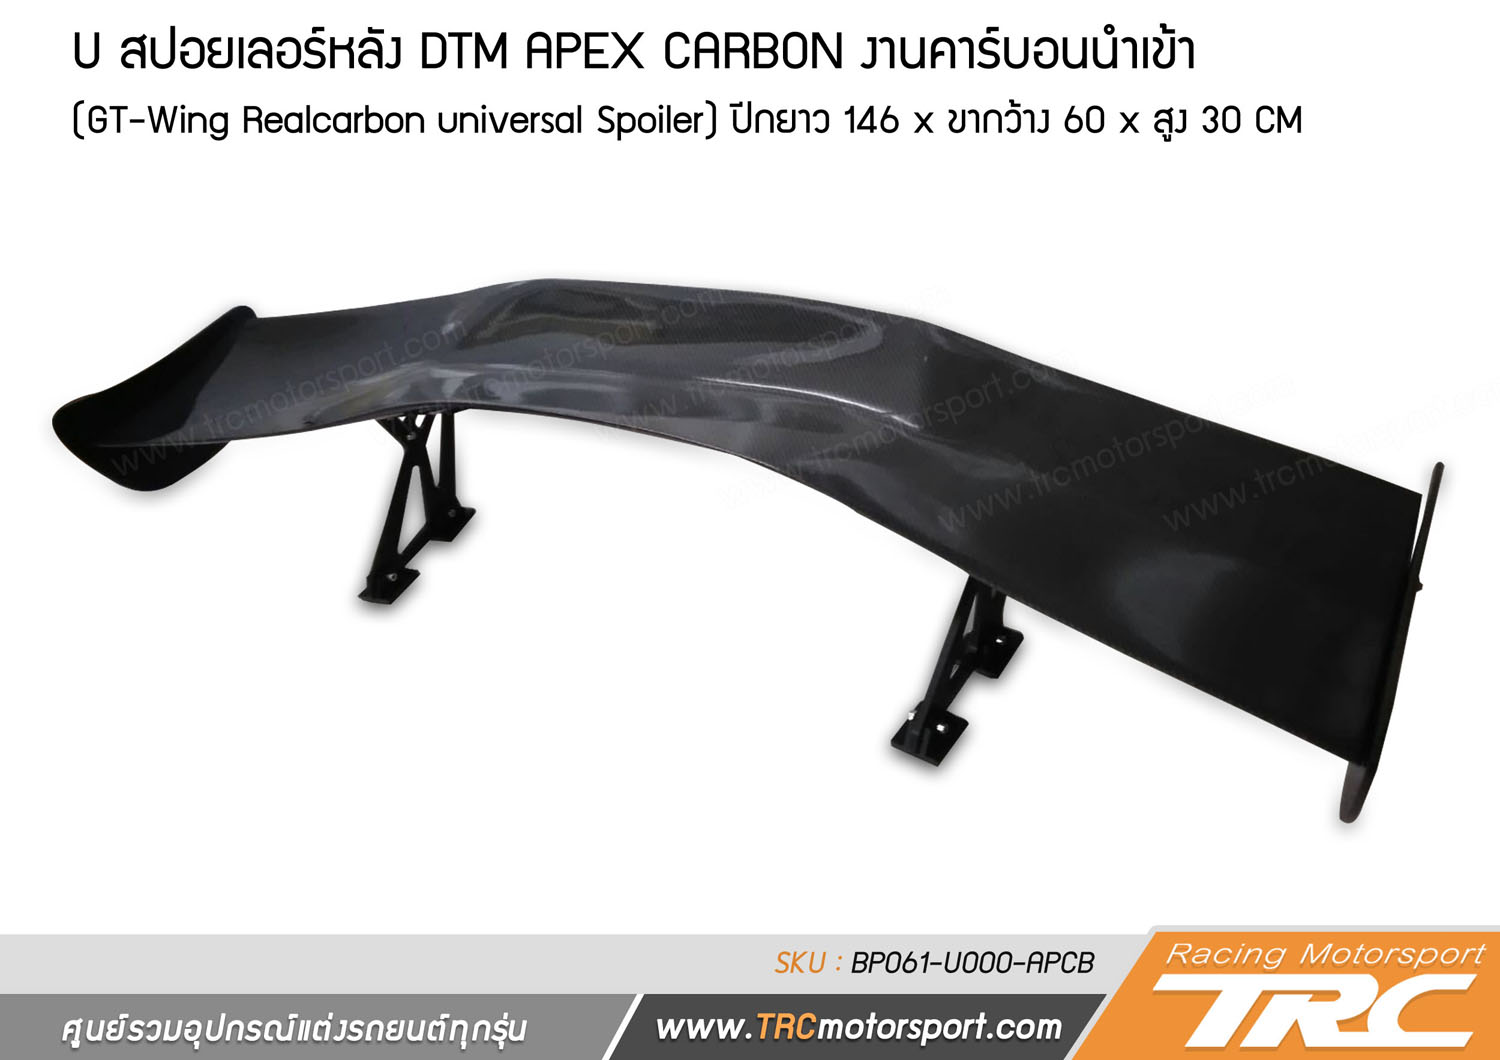 สปอยเลอร์หลัง DTM APEX CARBON งานคาร์บอนนำเข้า (GT-Wing Realcarbon universal Spoiler)